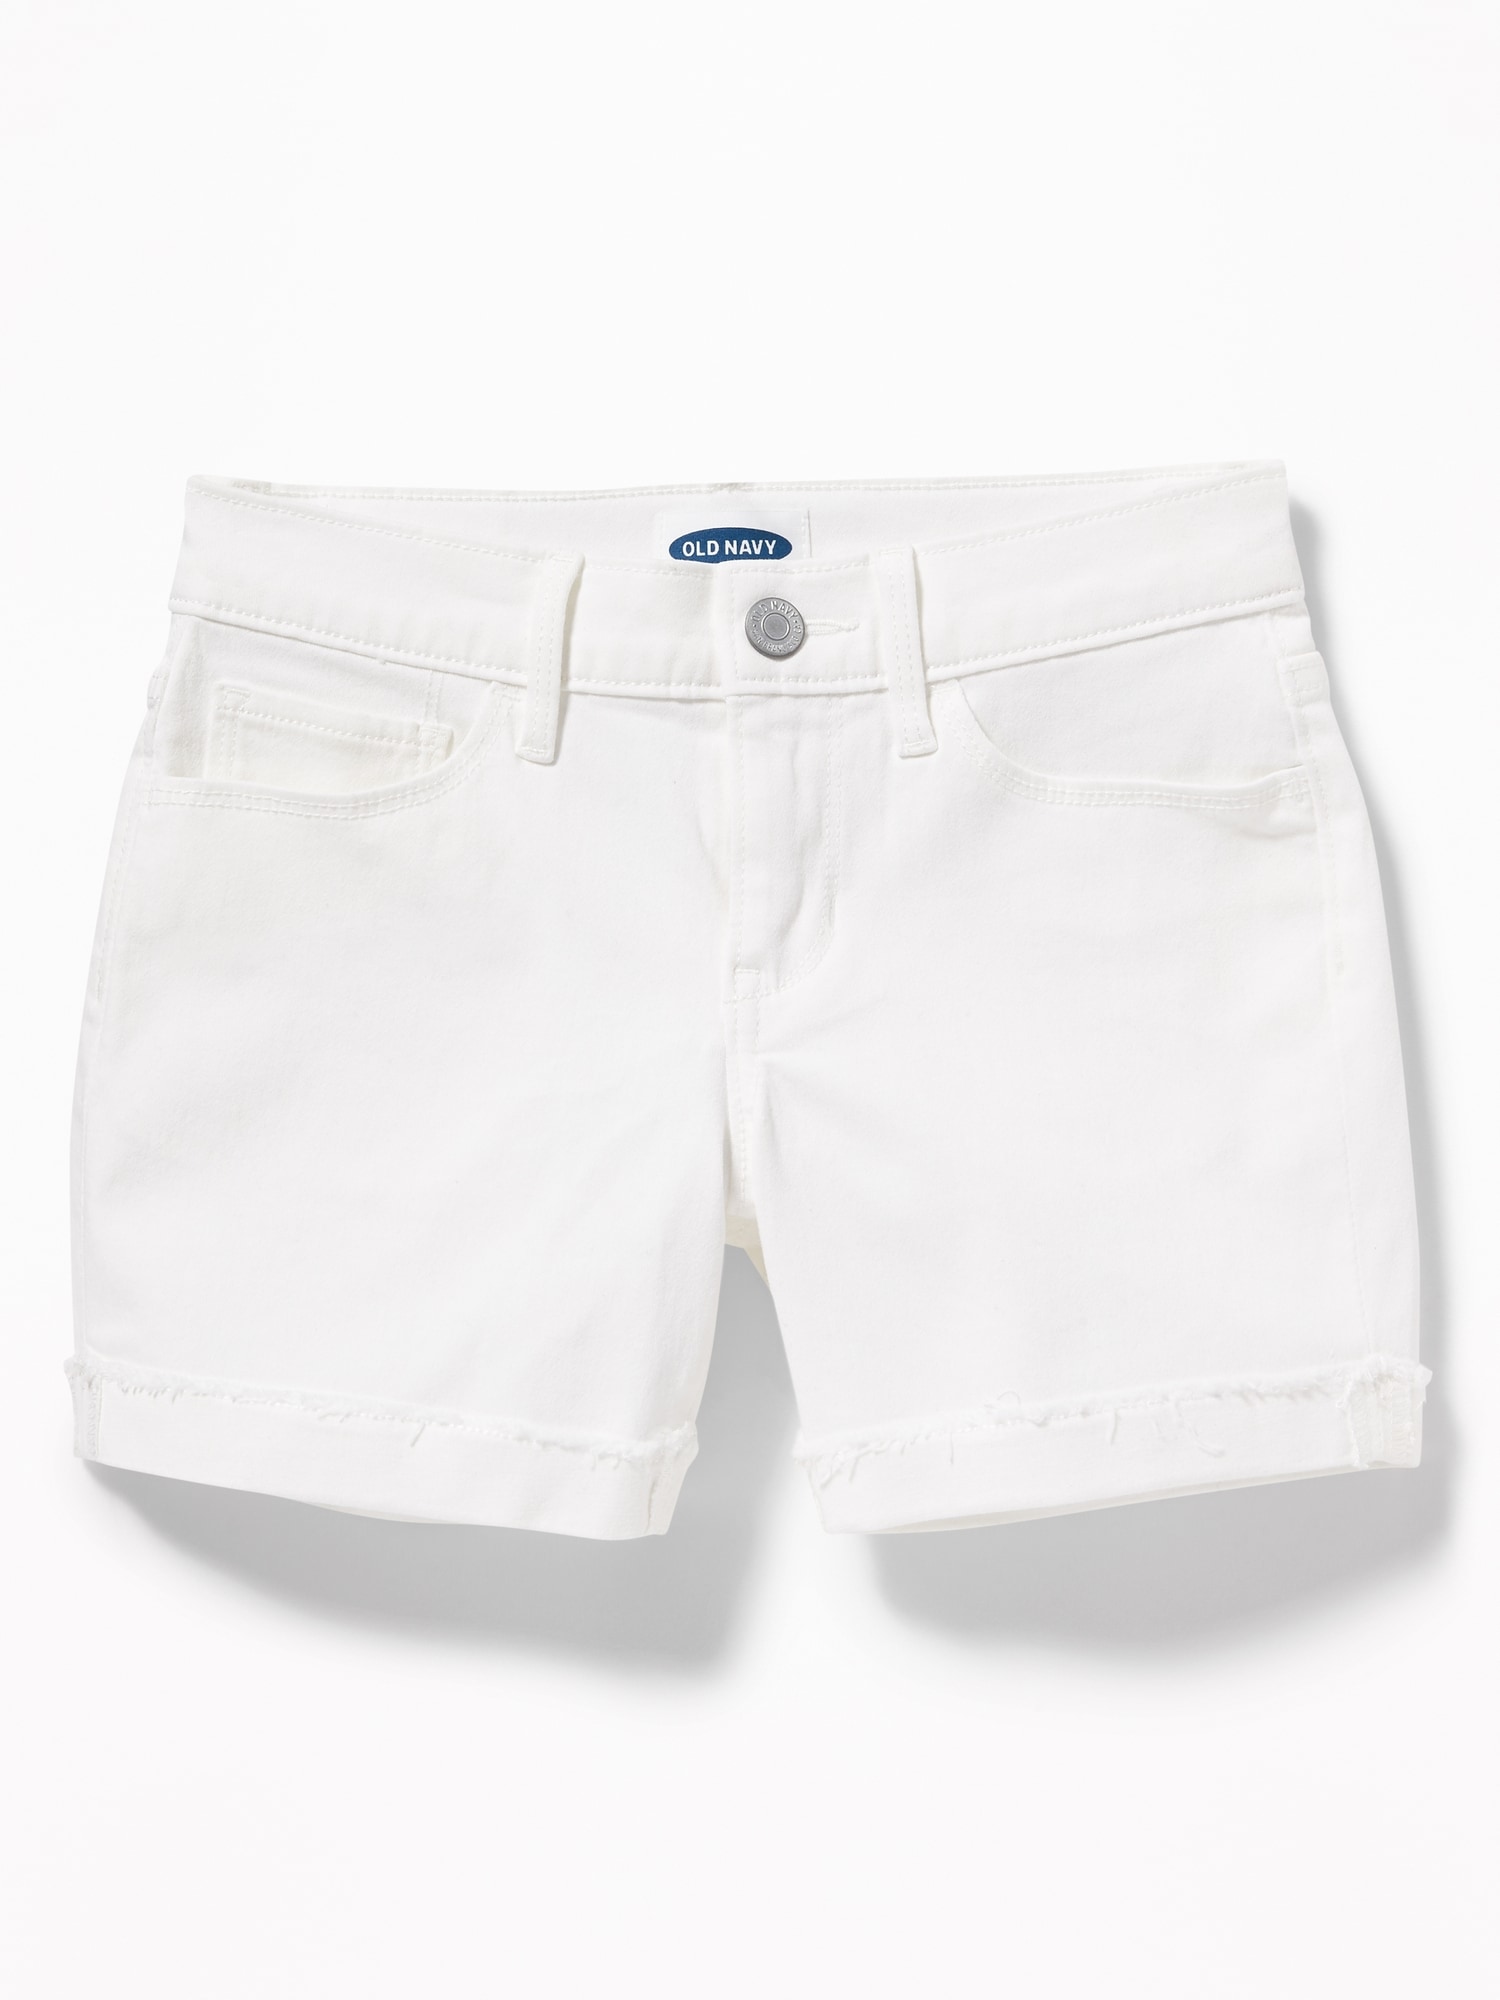 old navy white denim shorts